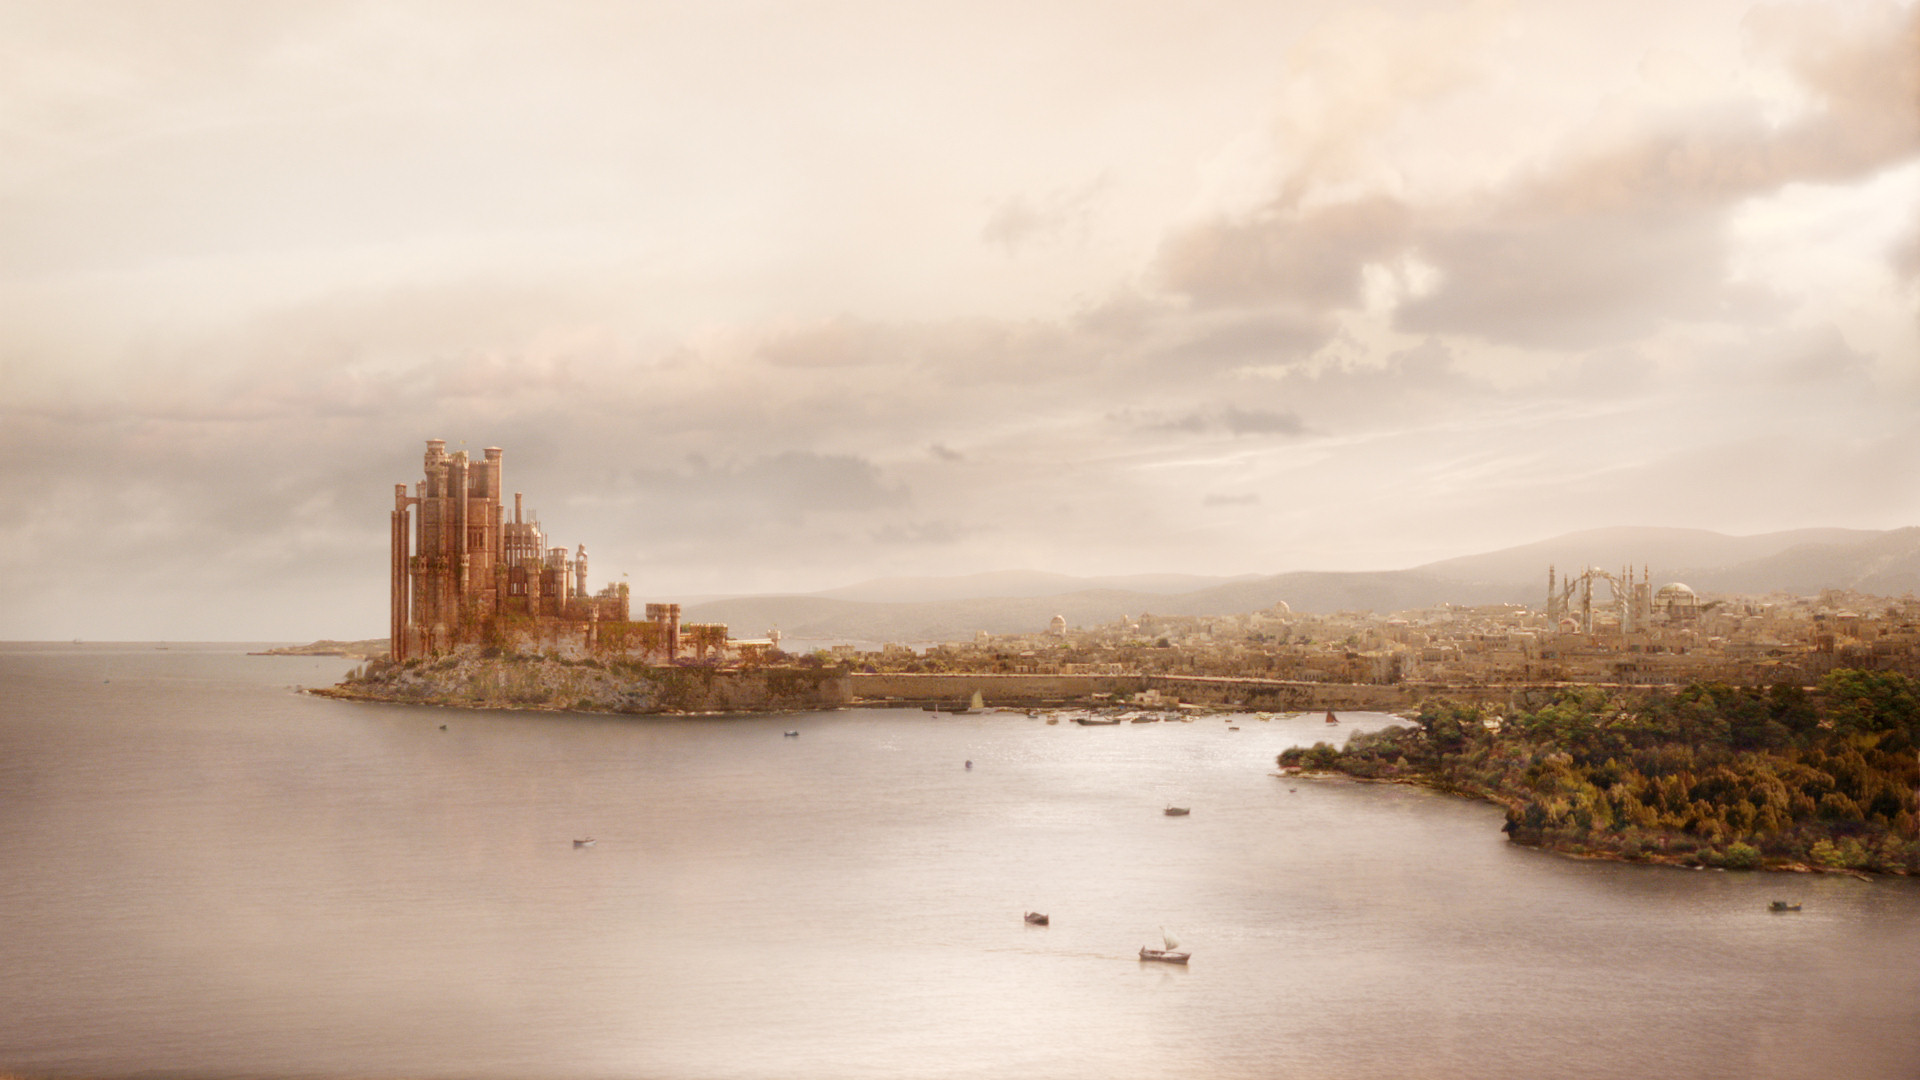 King's Landing - Game of Thrones Wiki1920 x 1080